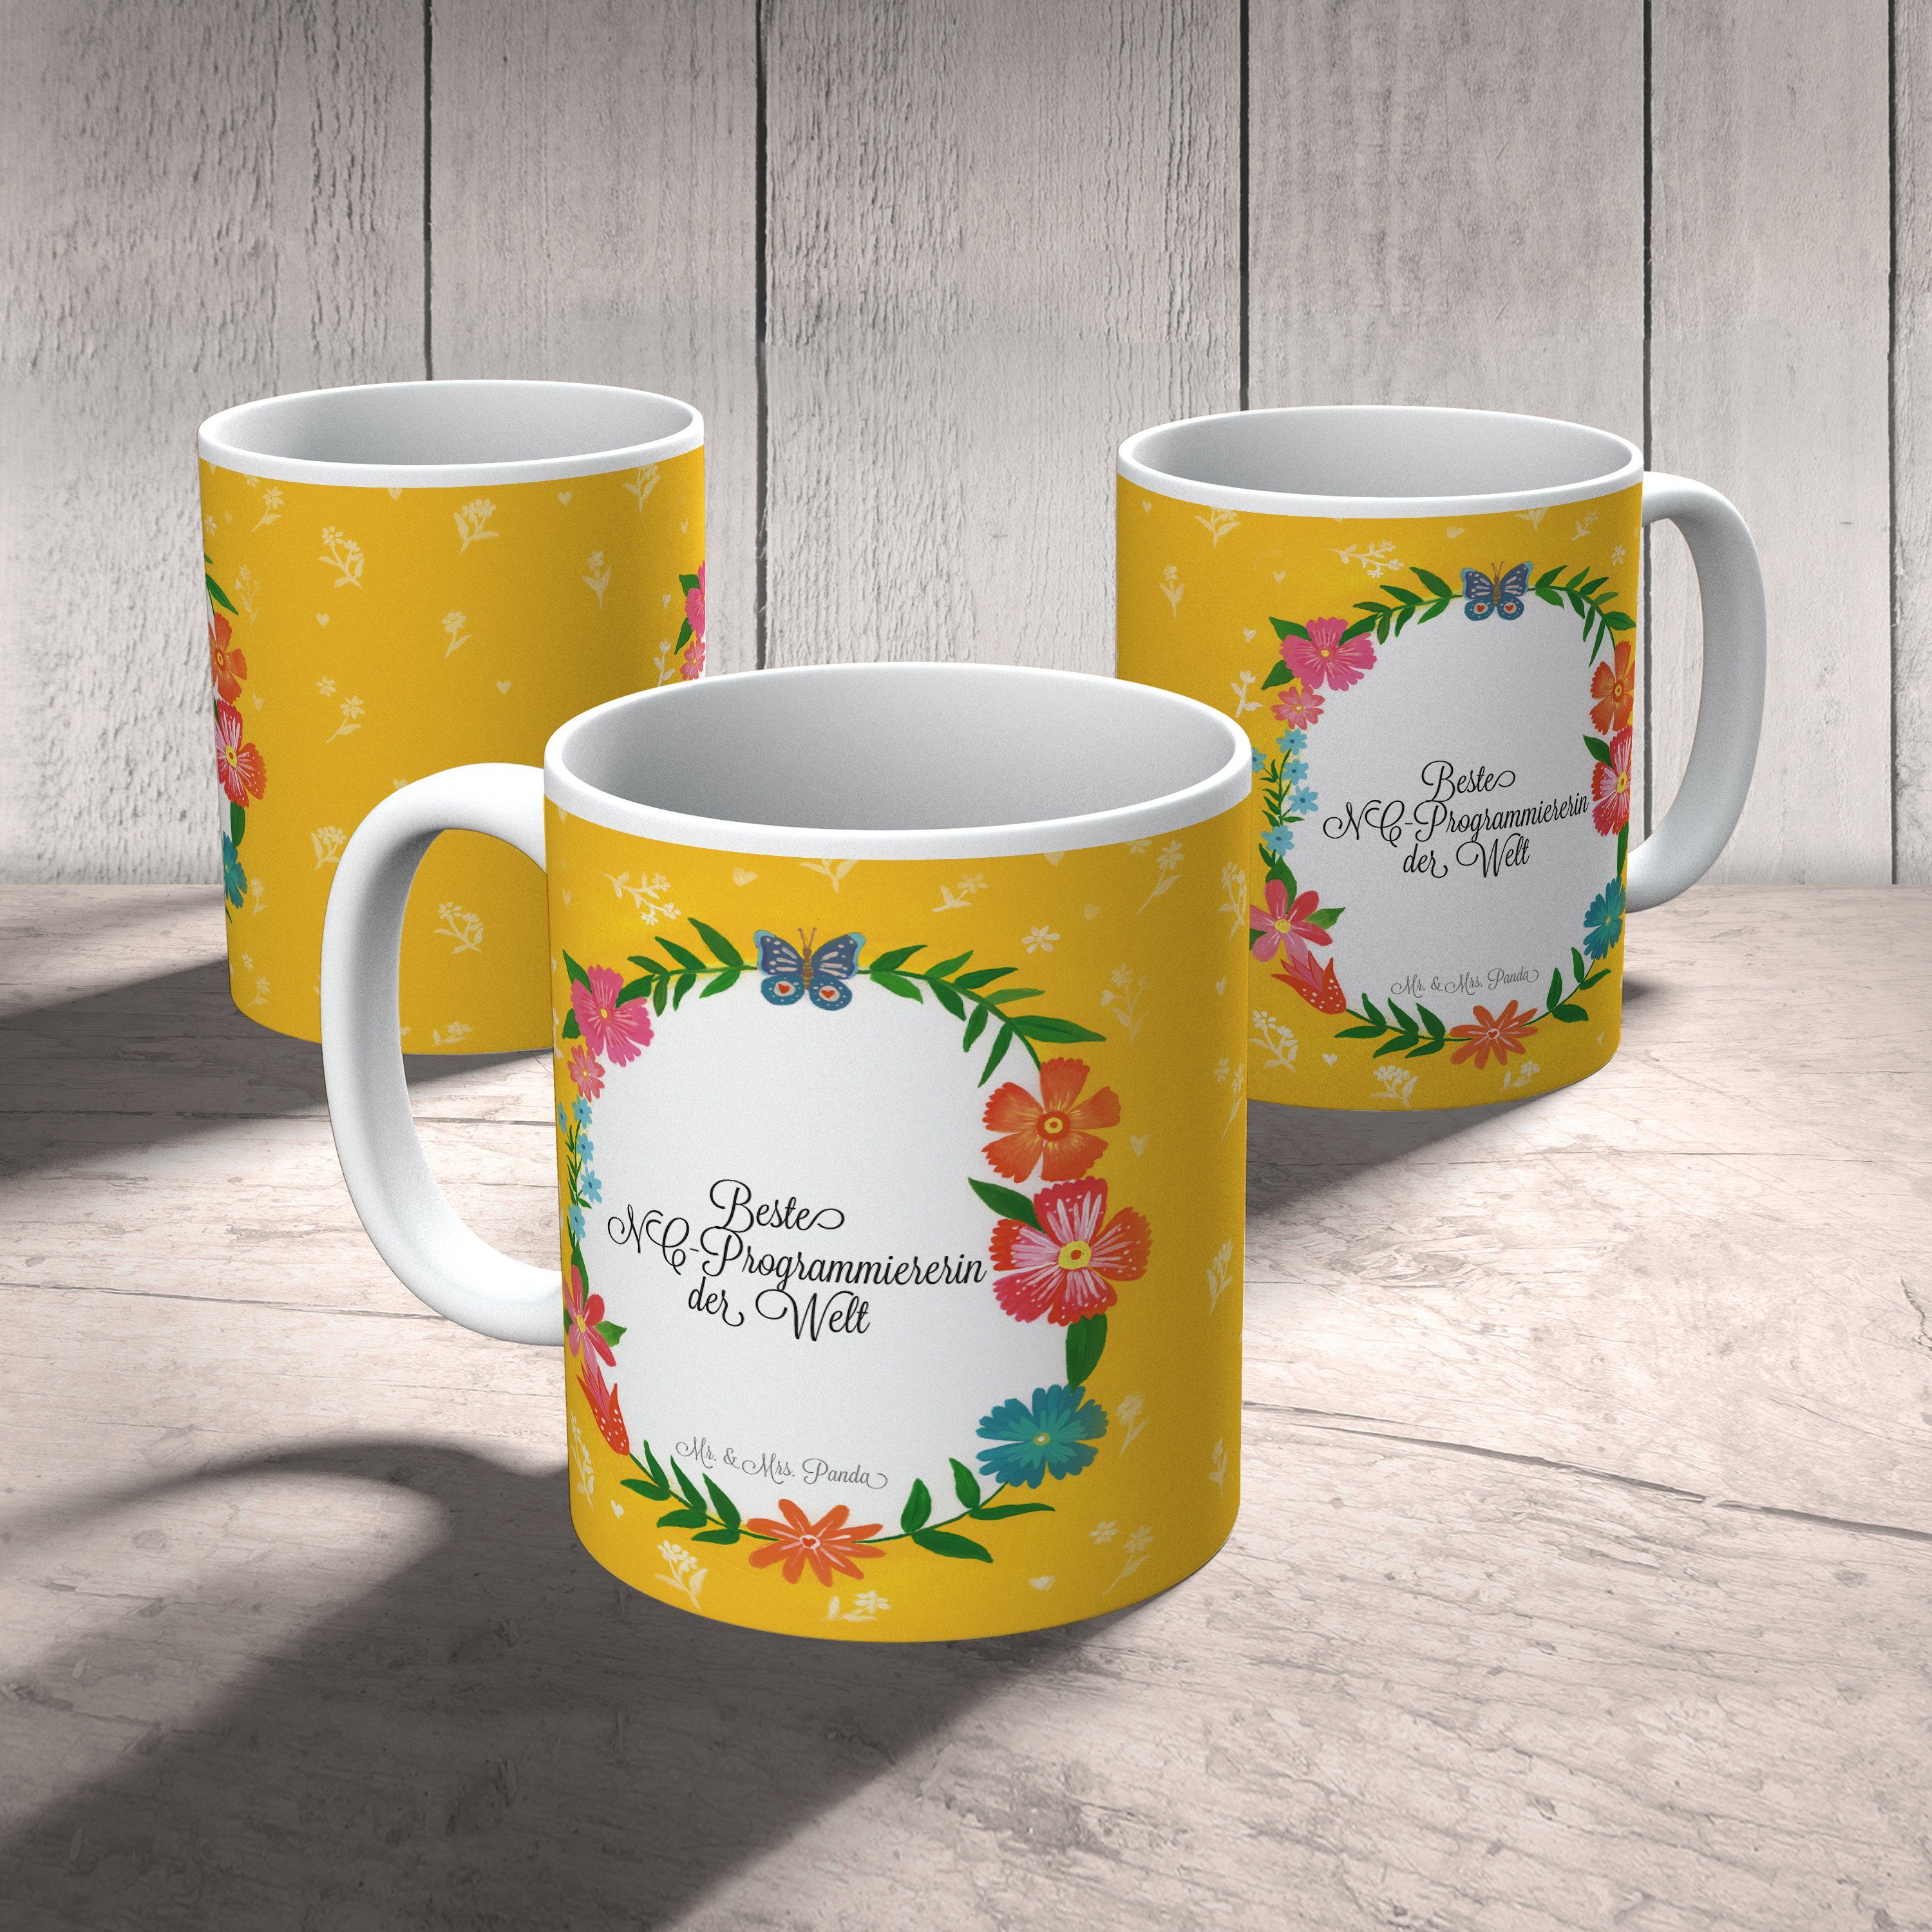 Mr. & Mrs. Panda Tasse Schenken, Tasse, - Keramik Geschenk NC-Programmiererin Teeta, Tasse, Geschenk